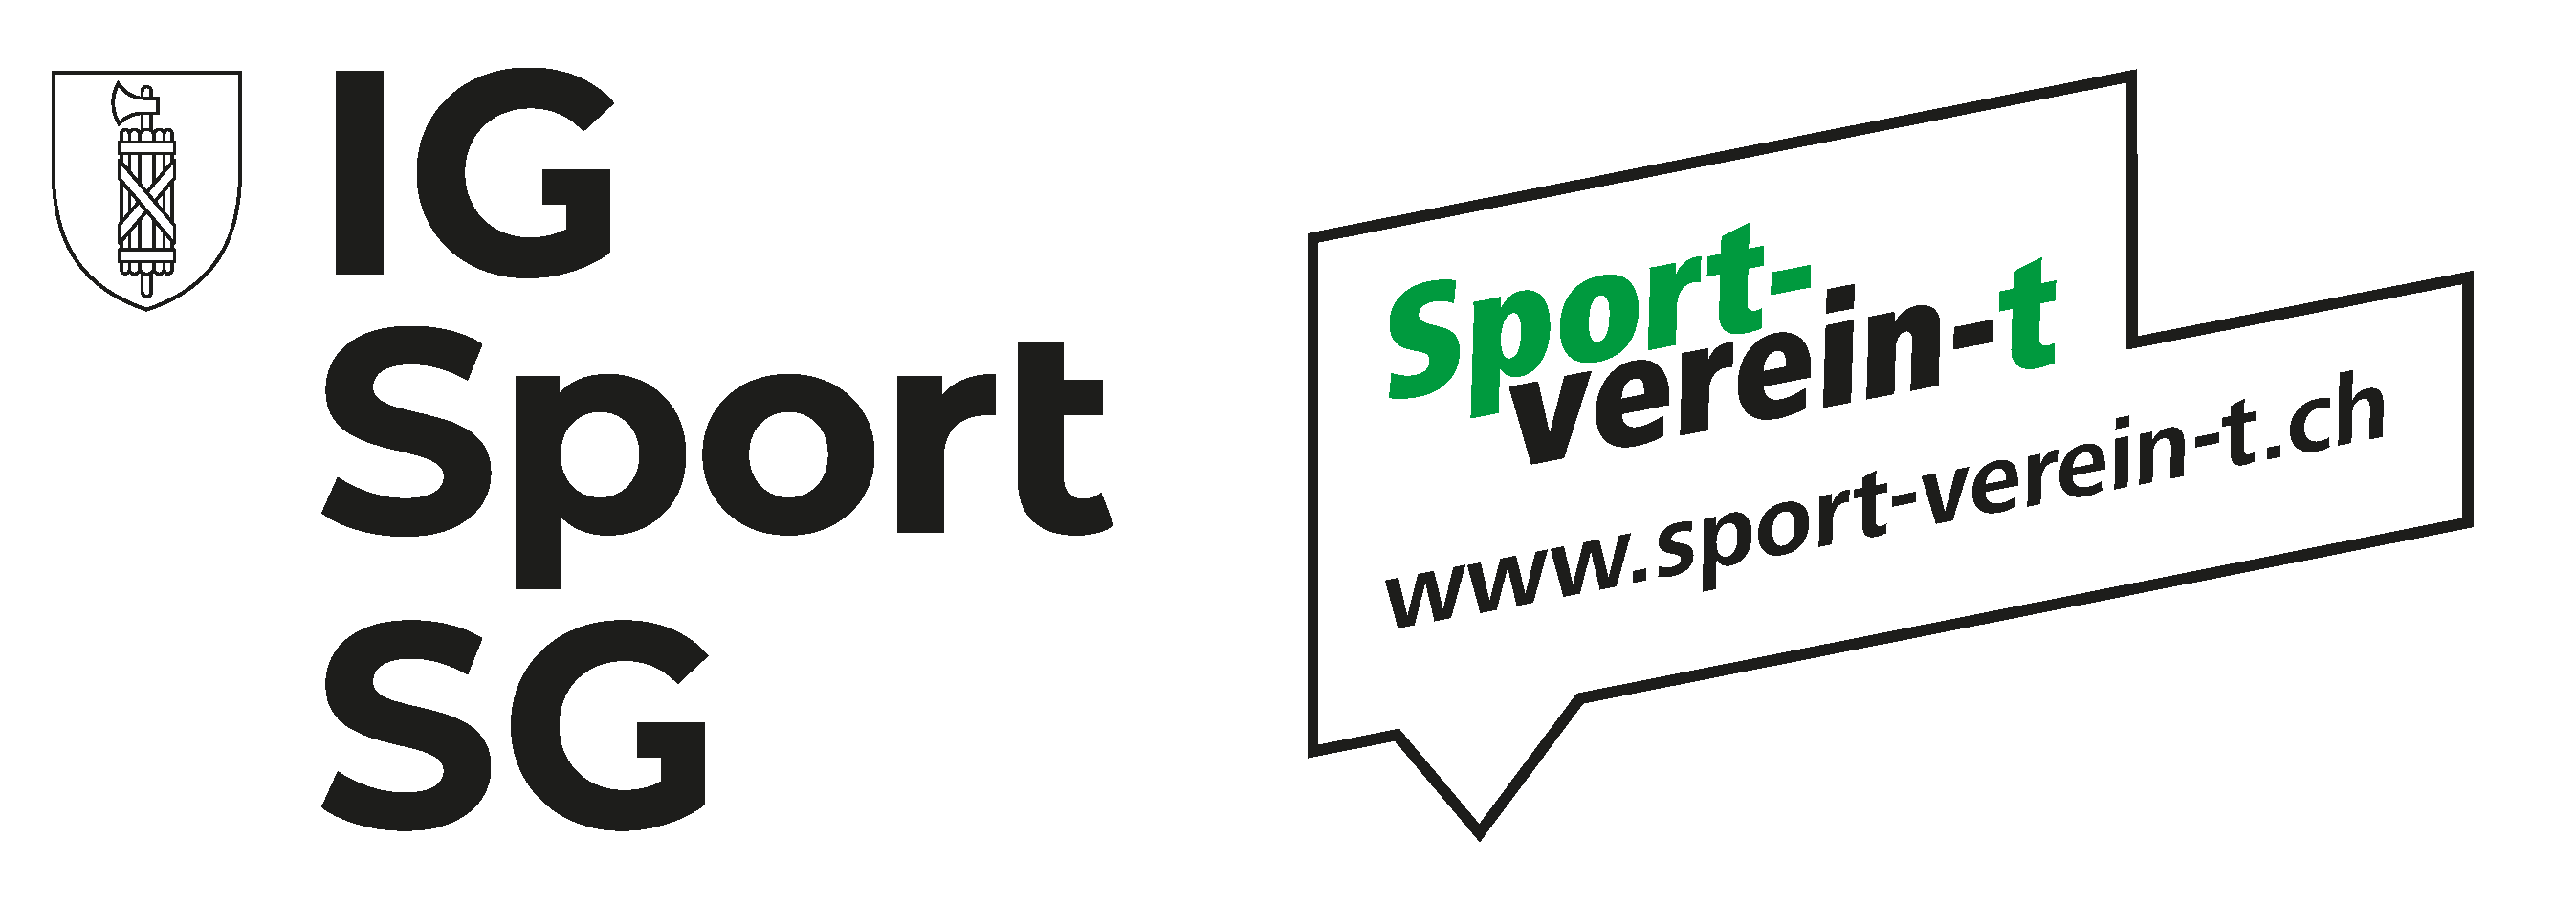 Sport-verein-t_Logo_fbg